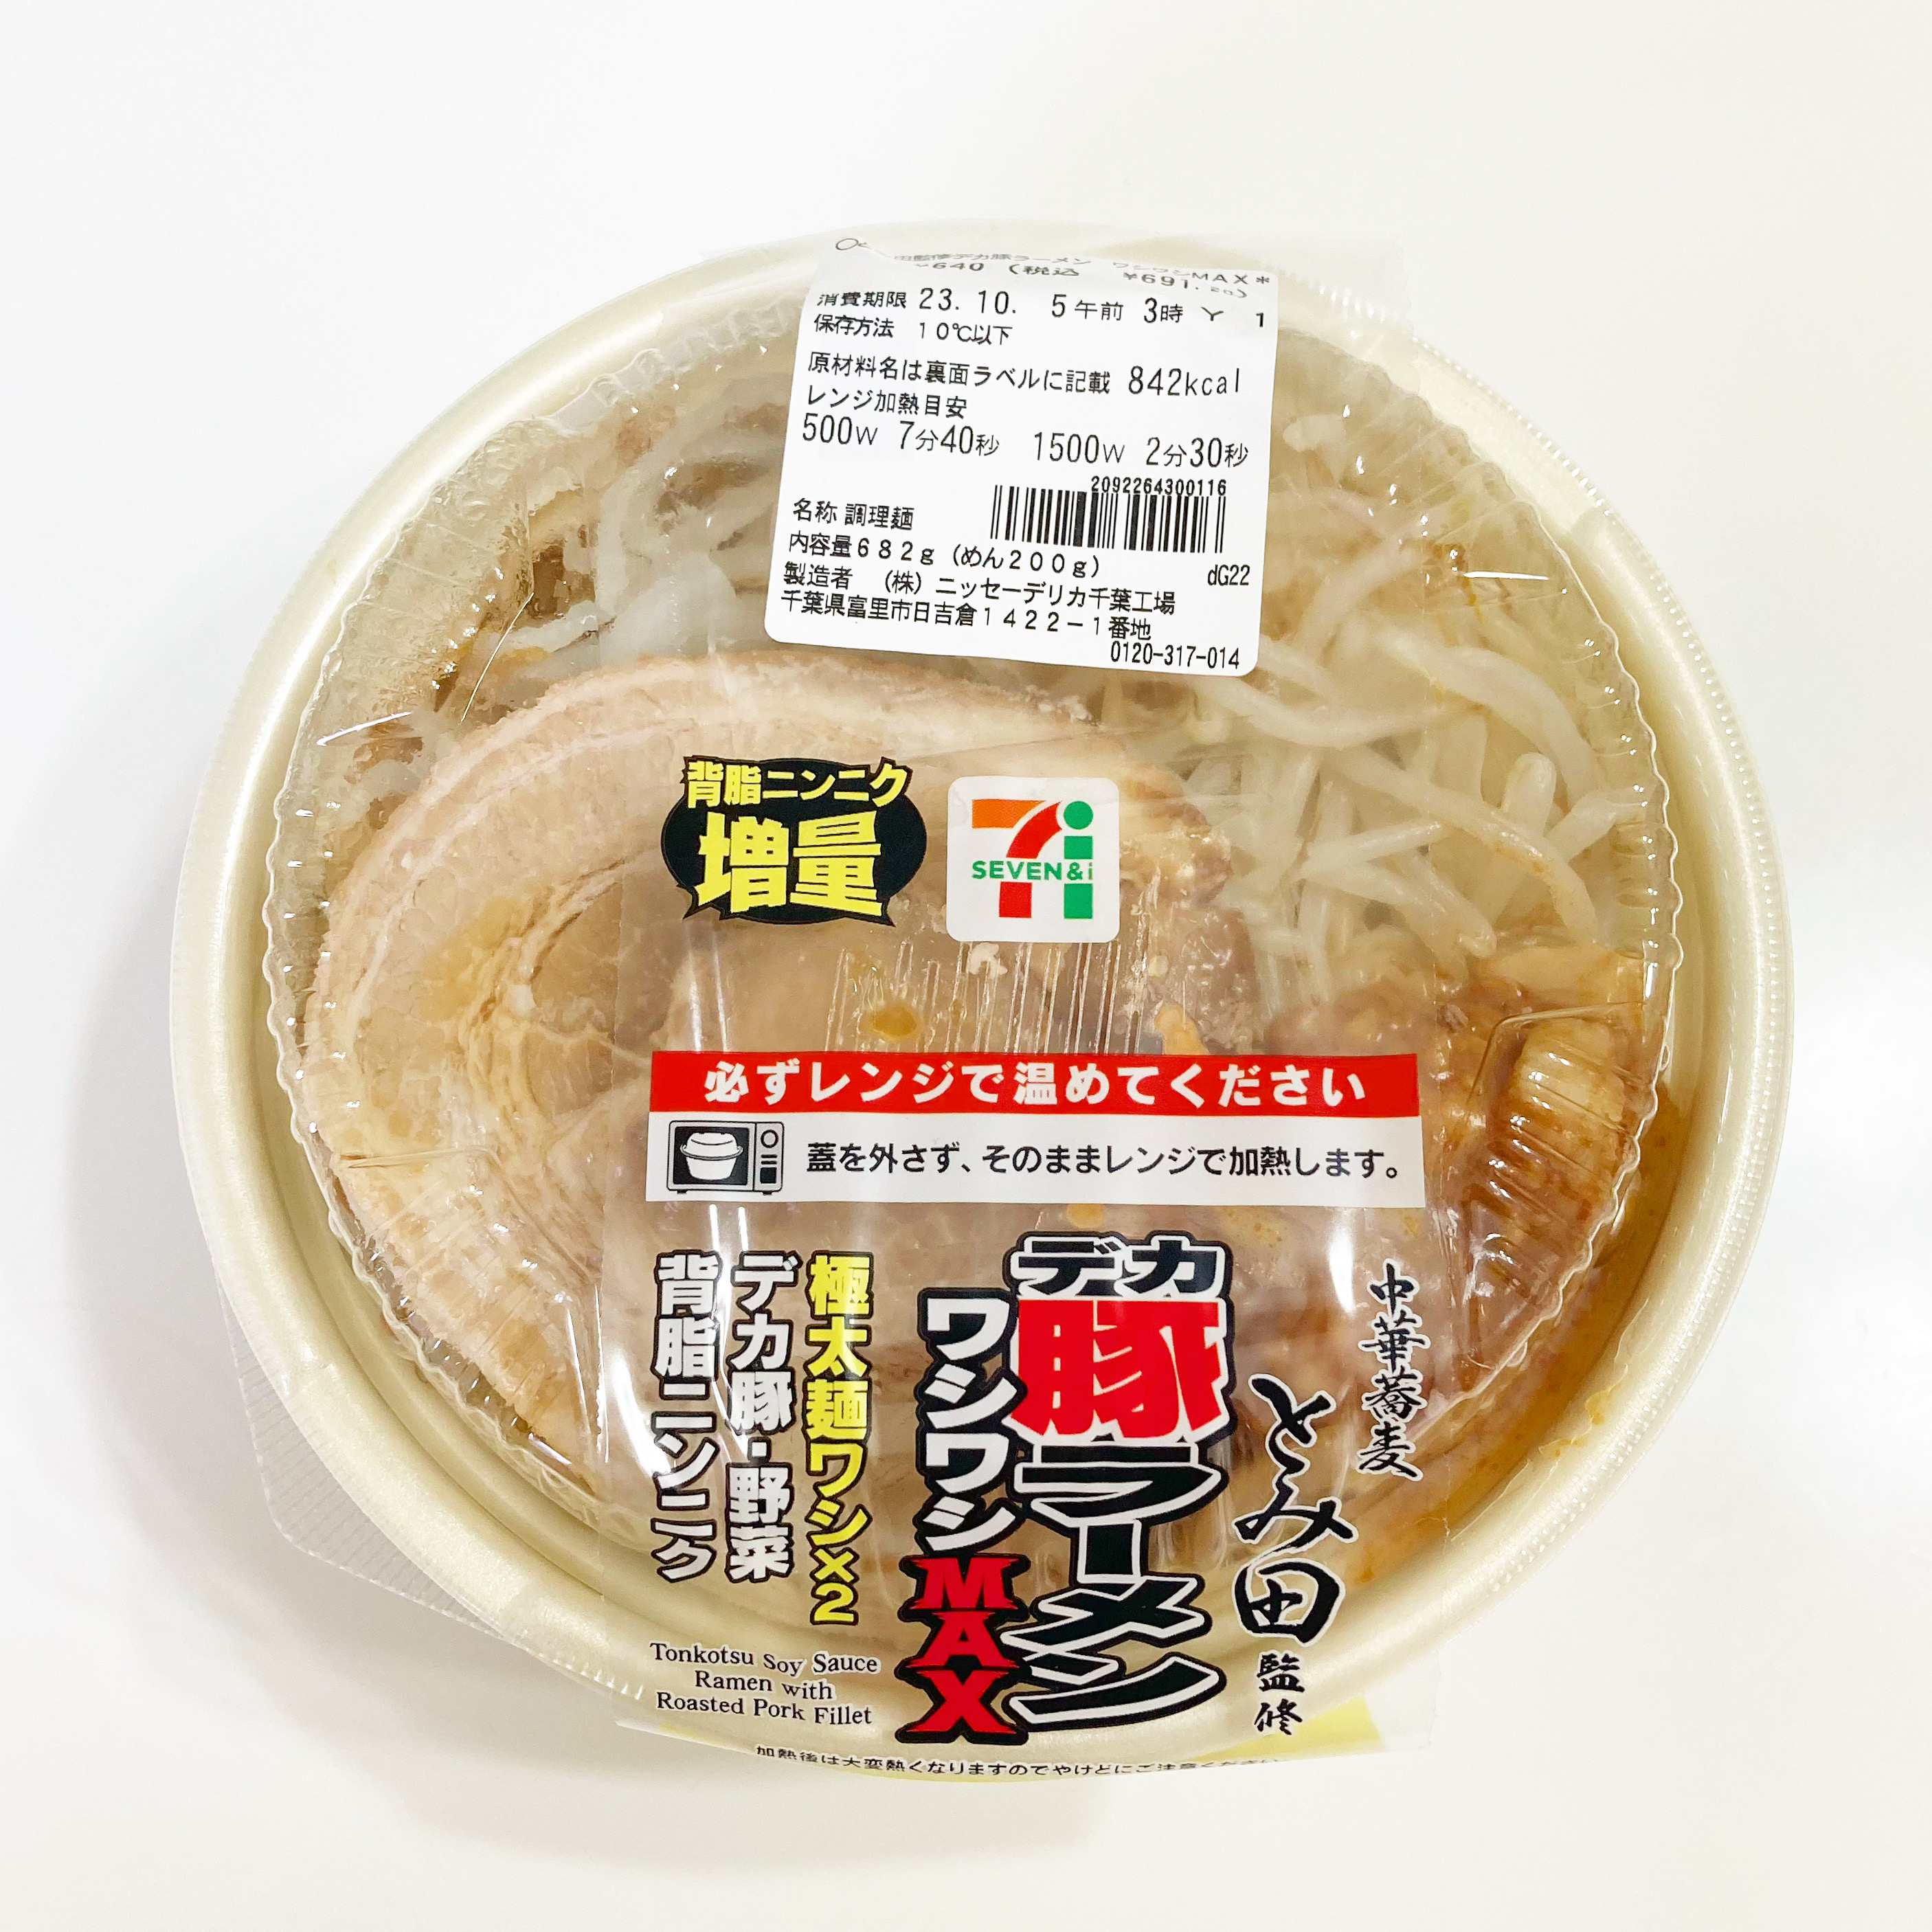 セブン-イレブンのオススメの麺「とみ田監修デカ豚ラーメン ワシワシMAX」